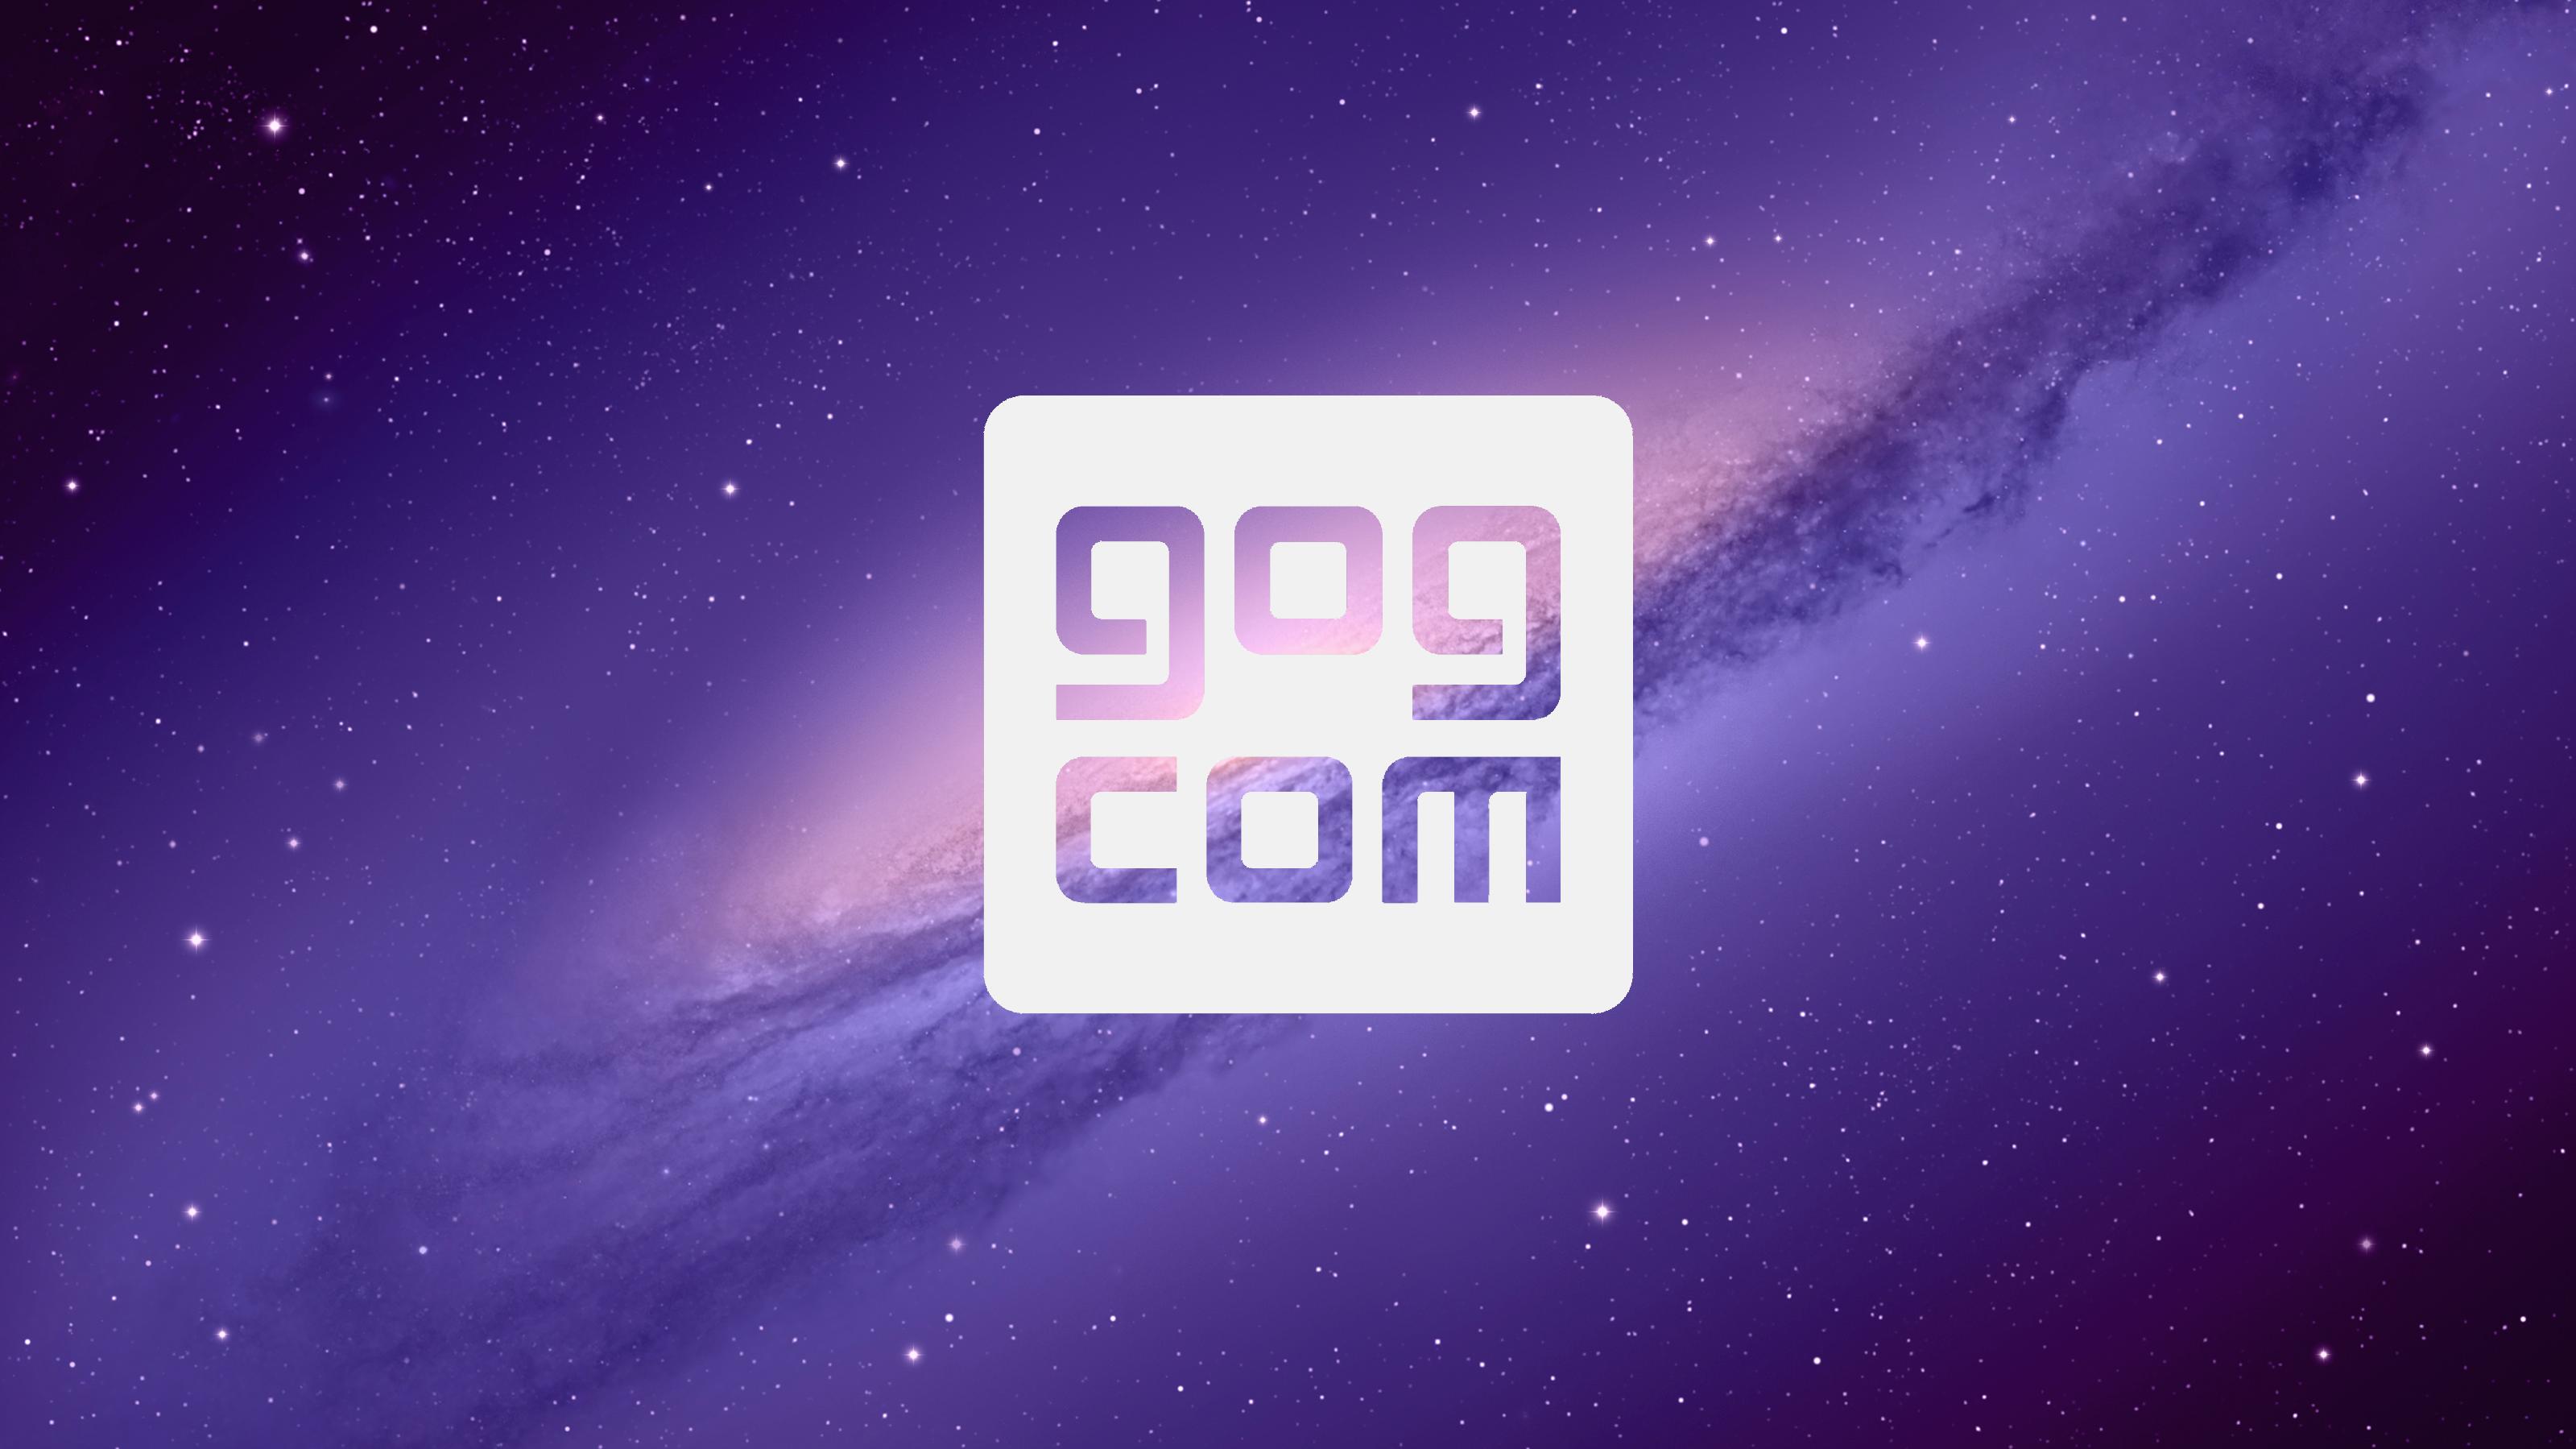 Gog.com Wallpaper